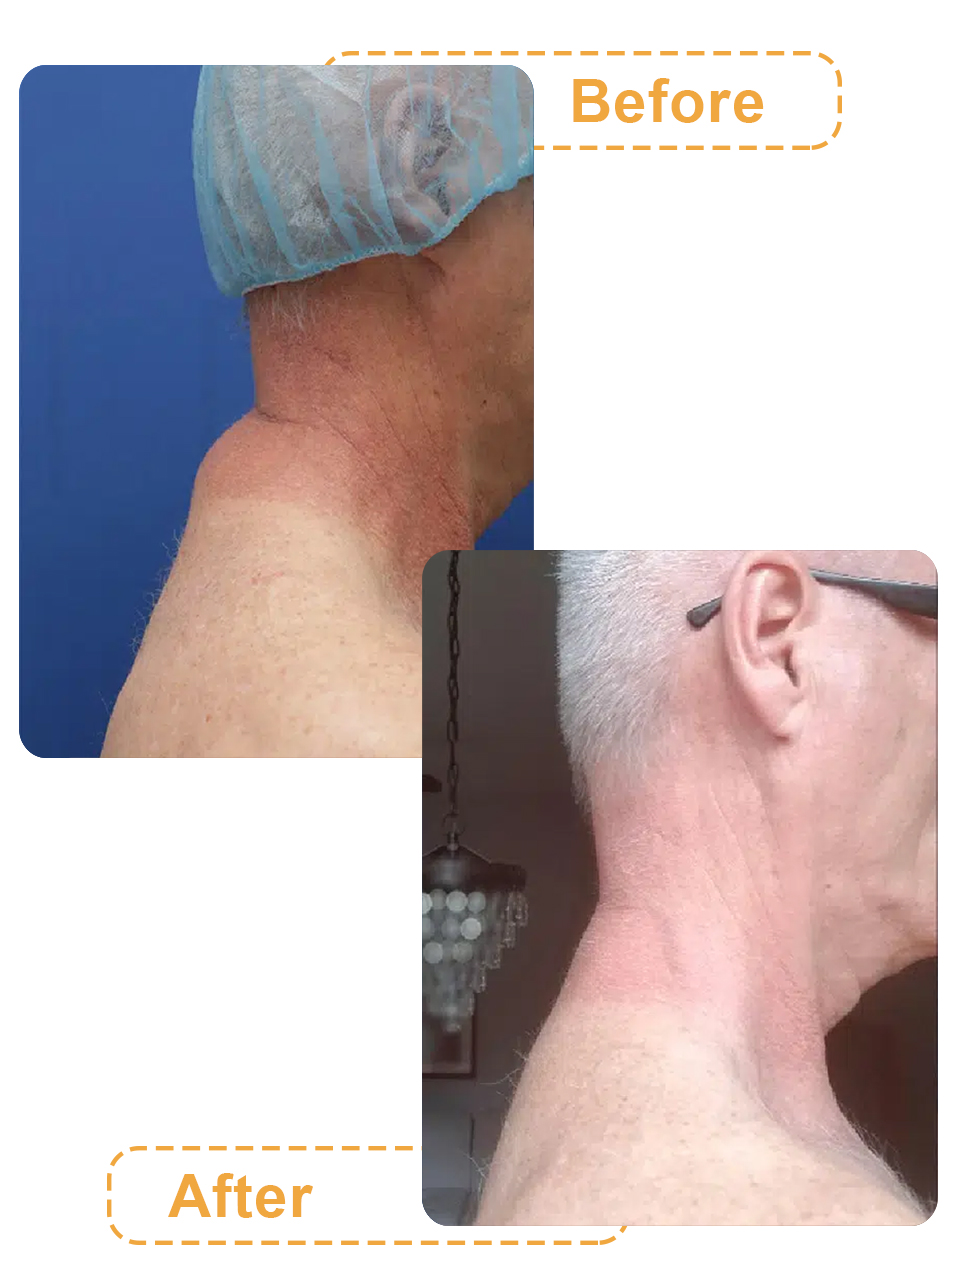 عکس قبل و بعد لیپوماتیک پشت گردن